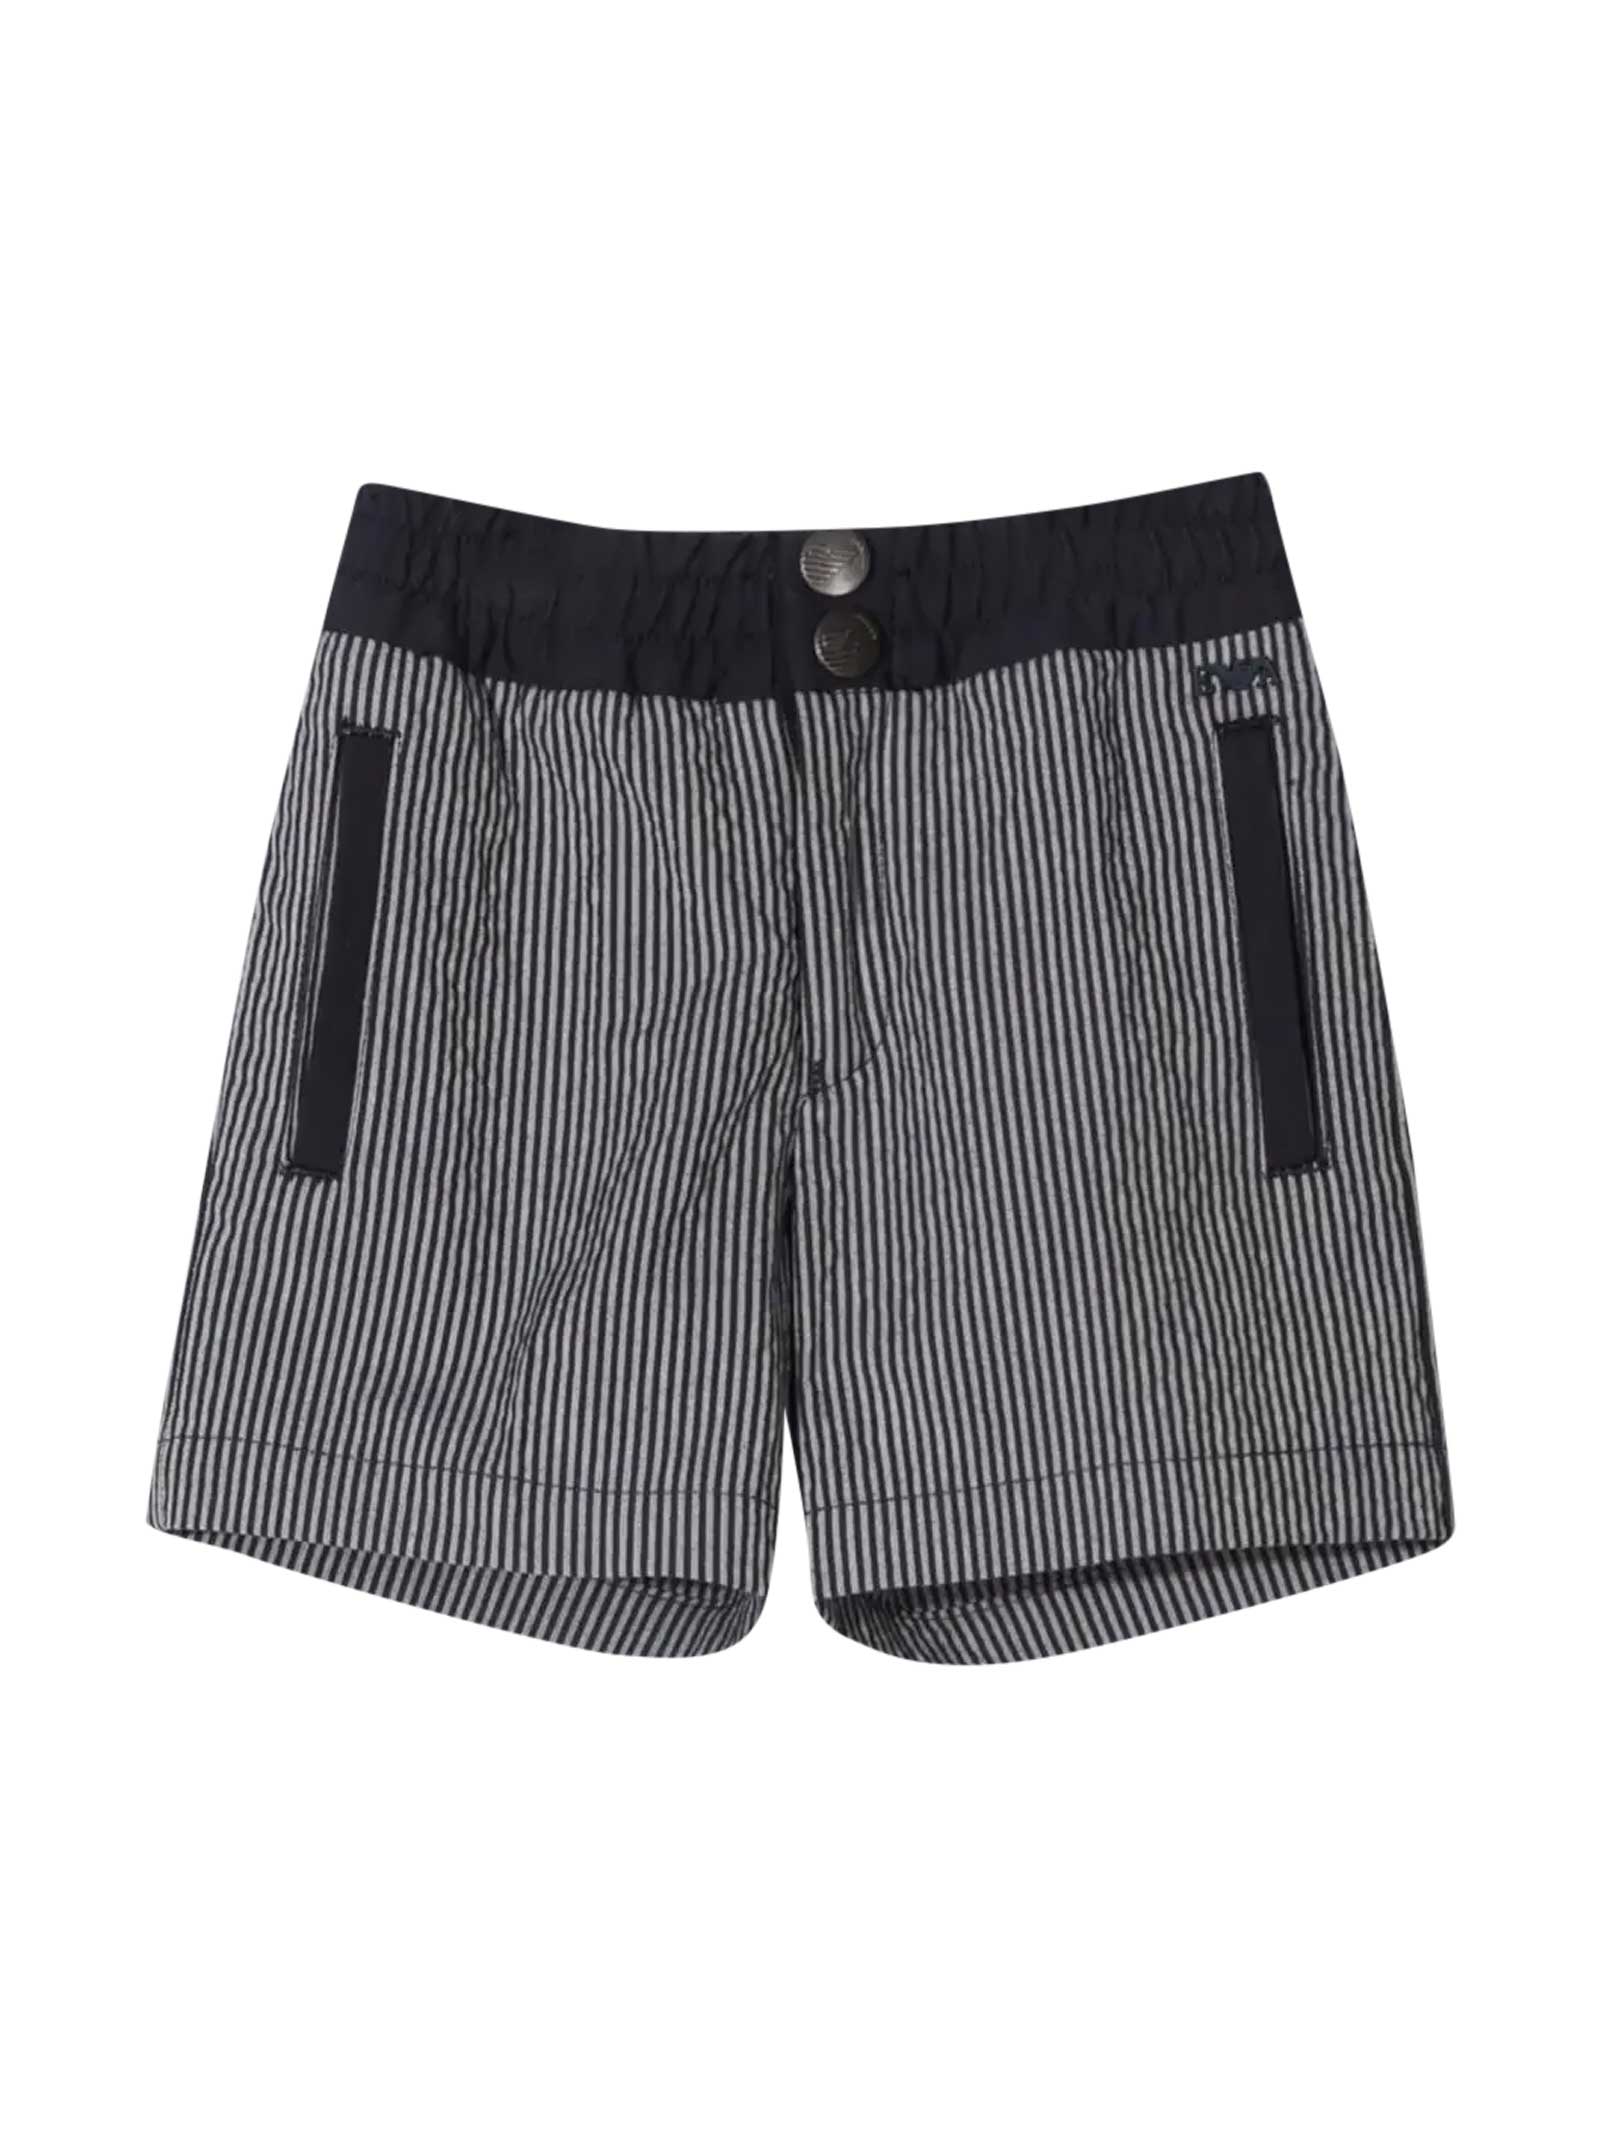 Emporio Armani Striped Shorts